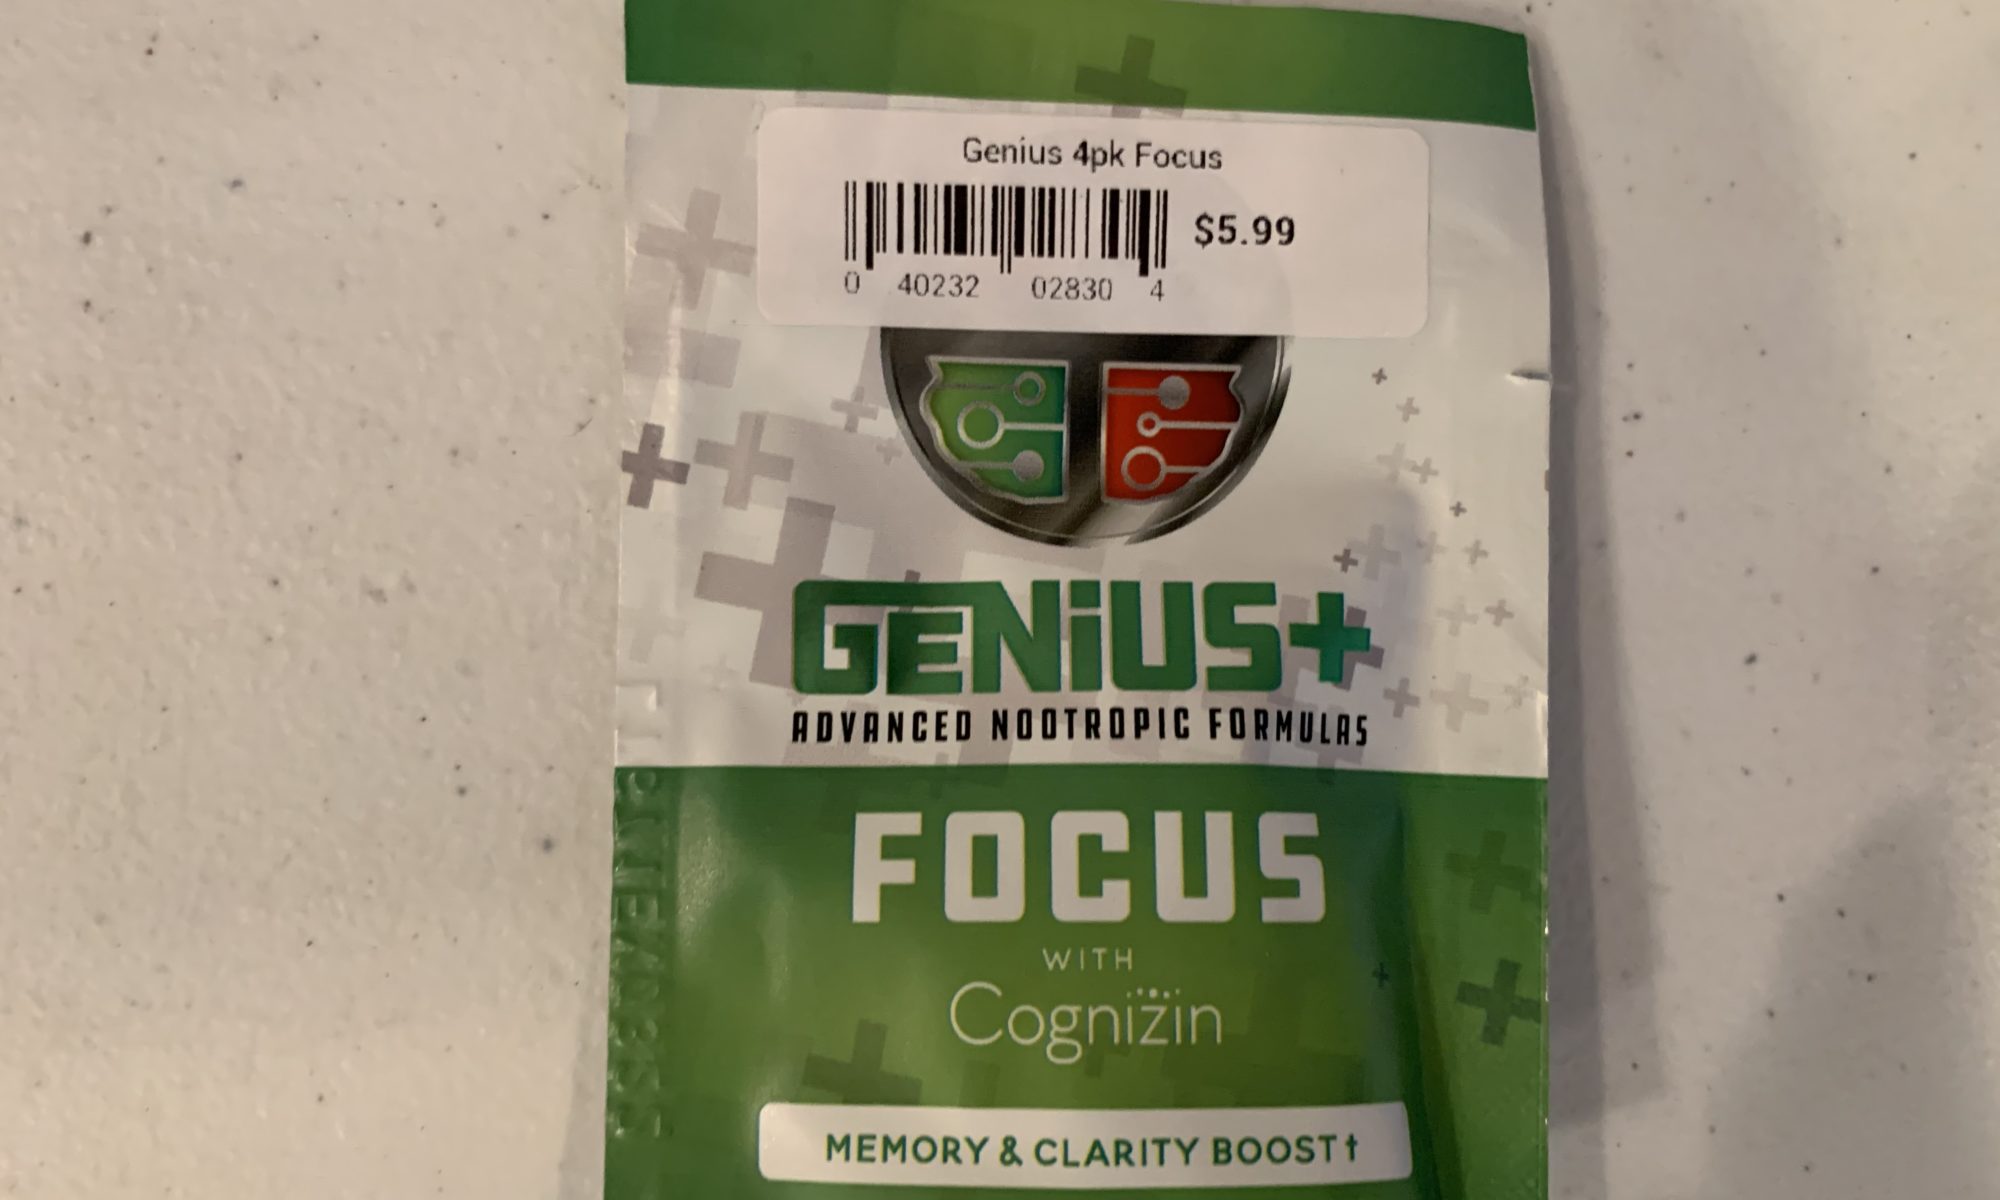 Genius plus Focus Cognizin review